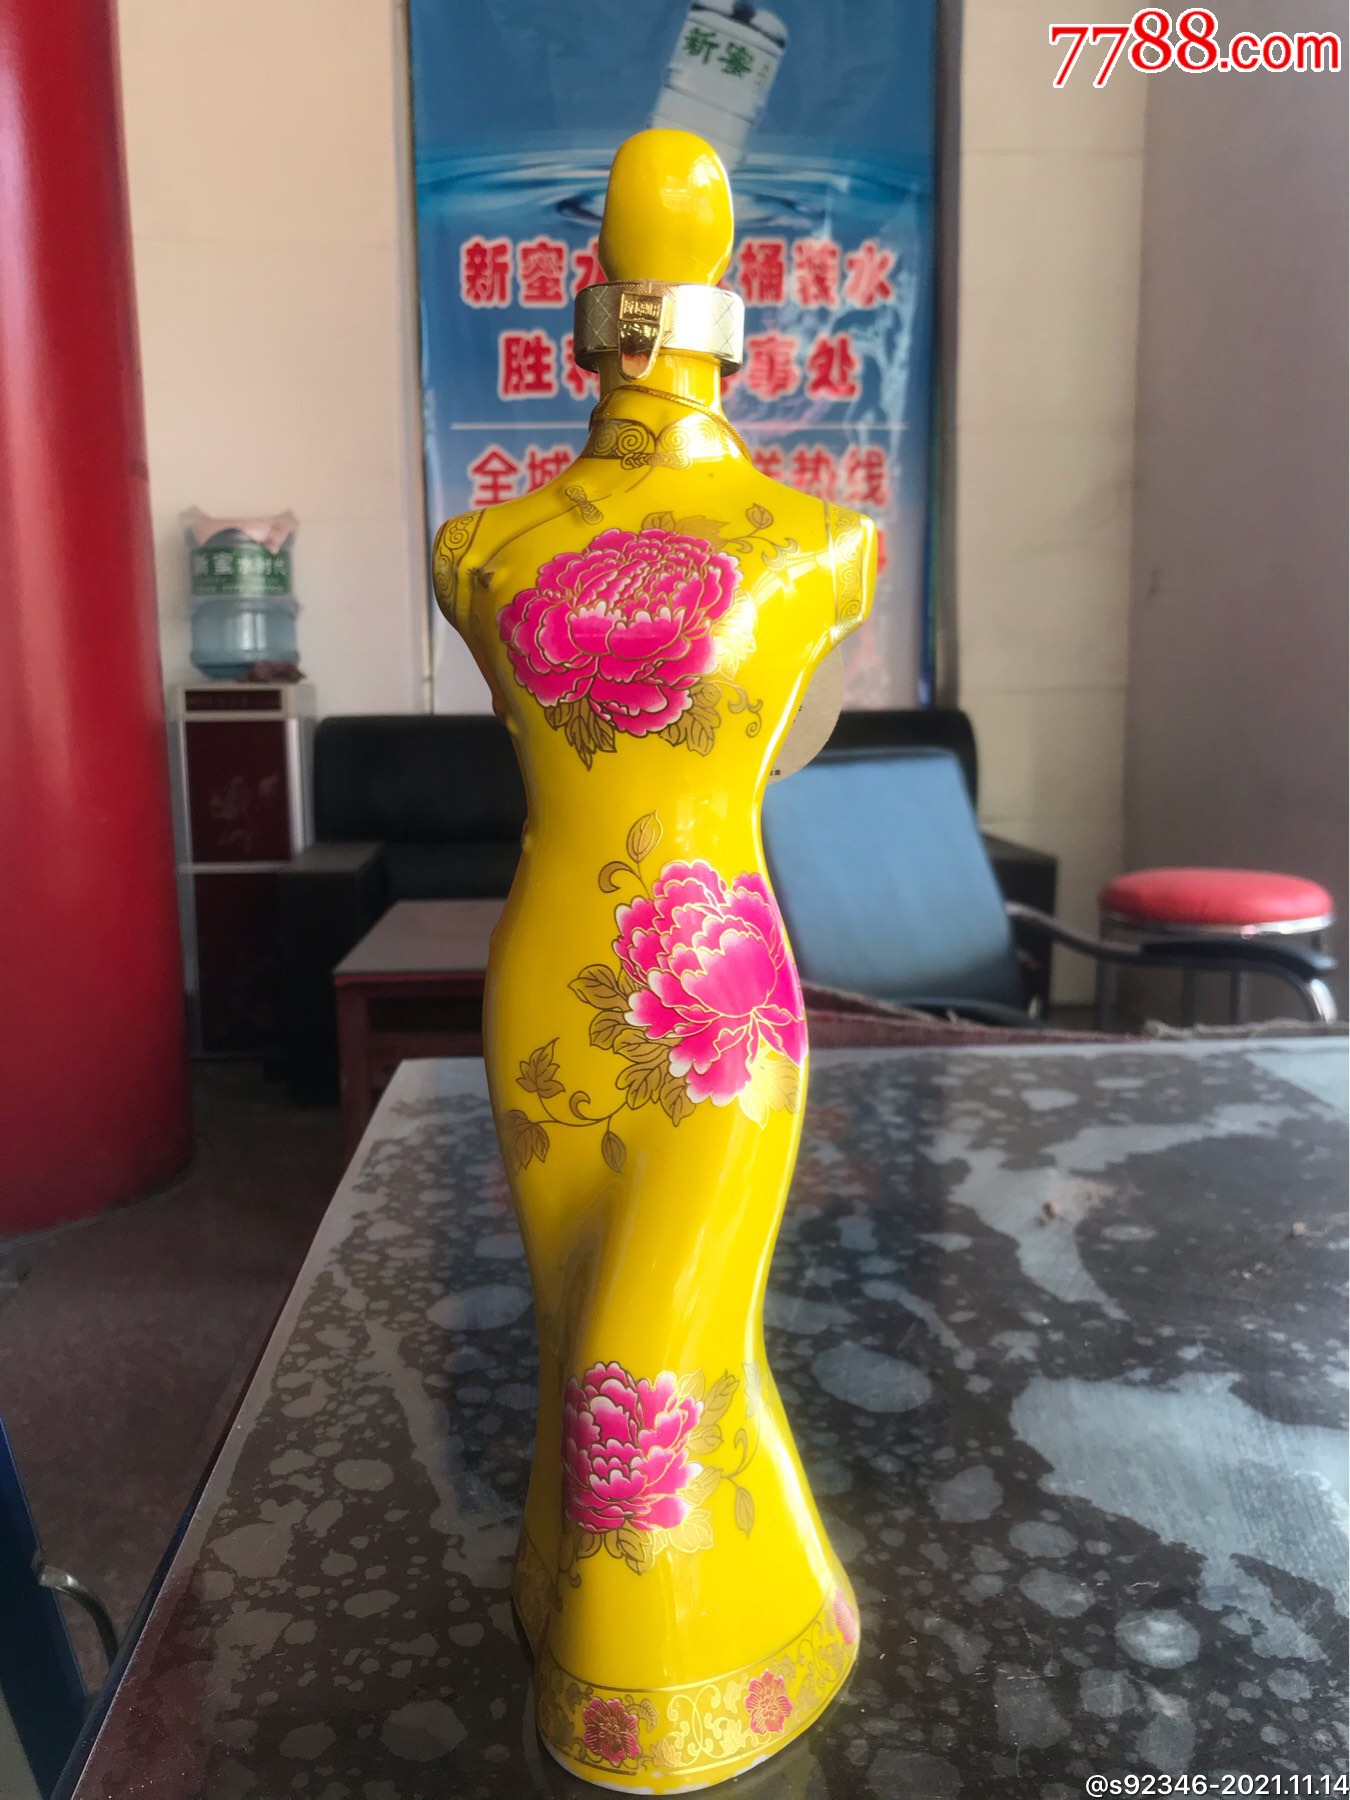 毛遂美女人体造型旗袍酒一瓶,高34厘米